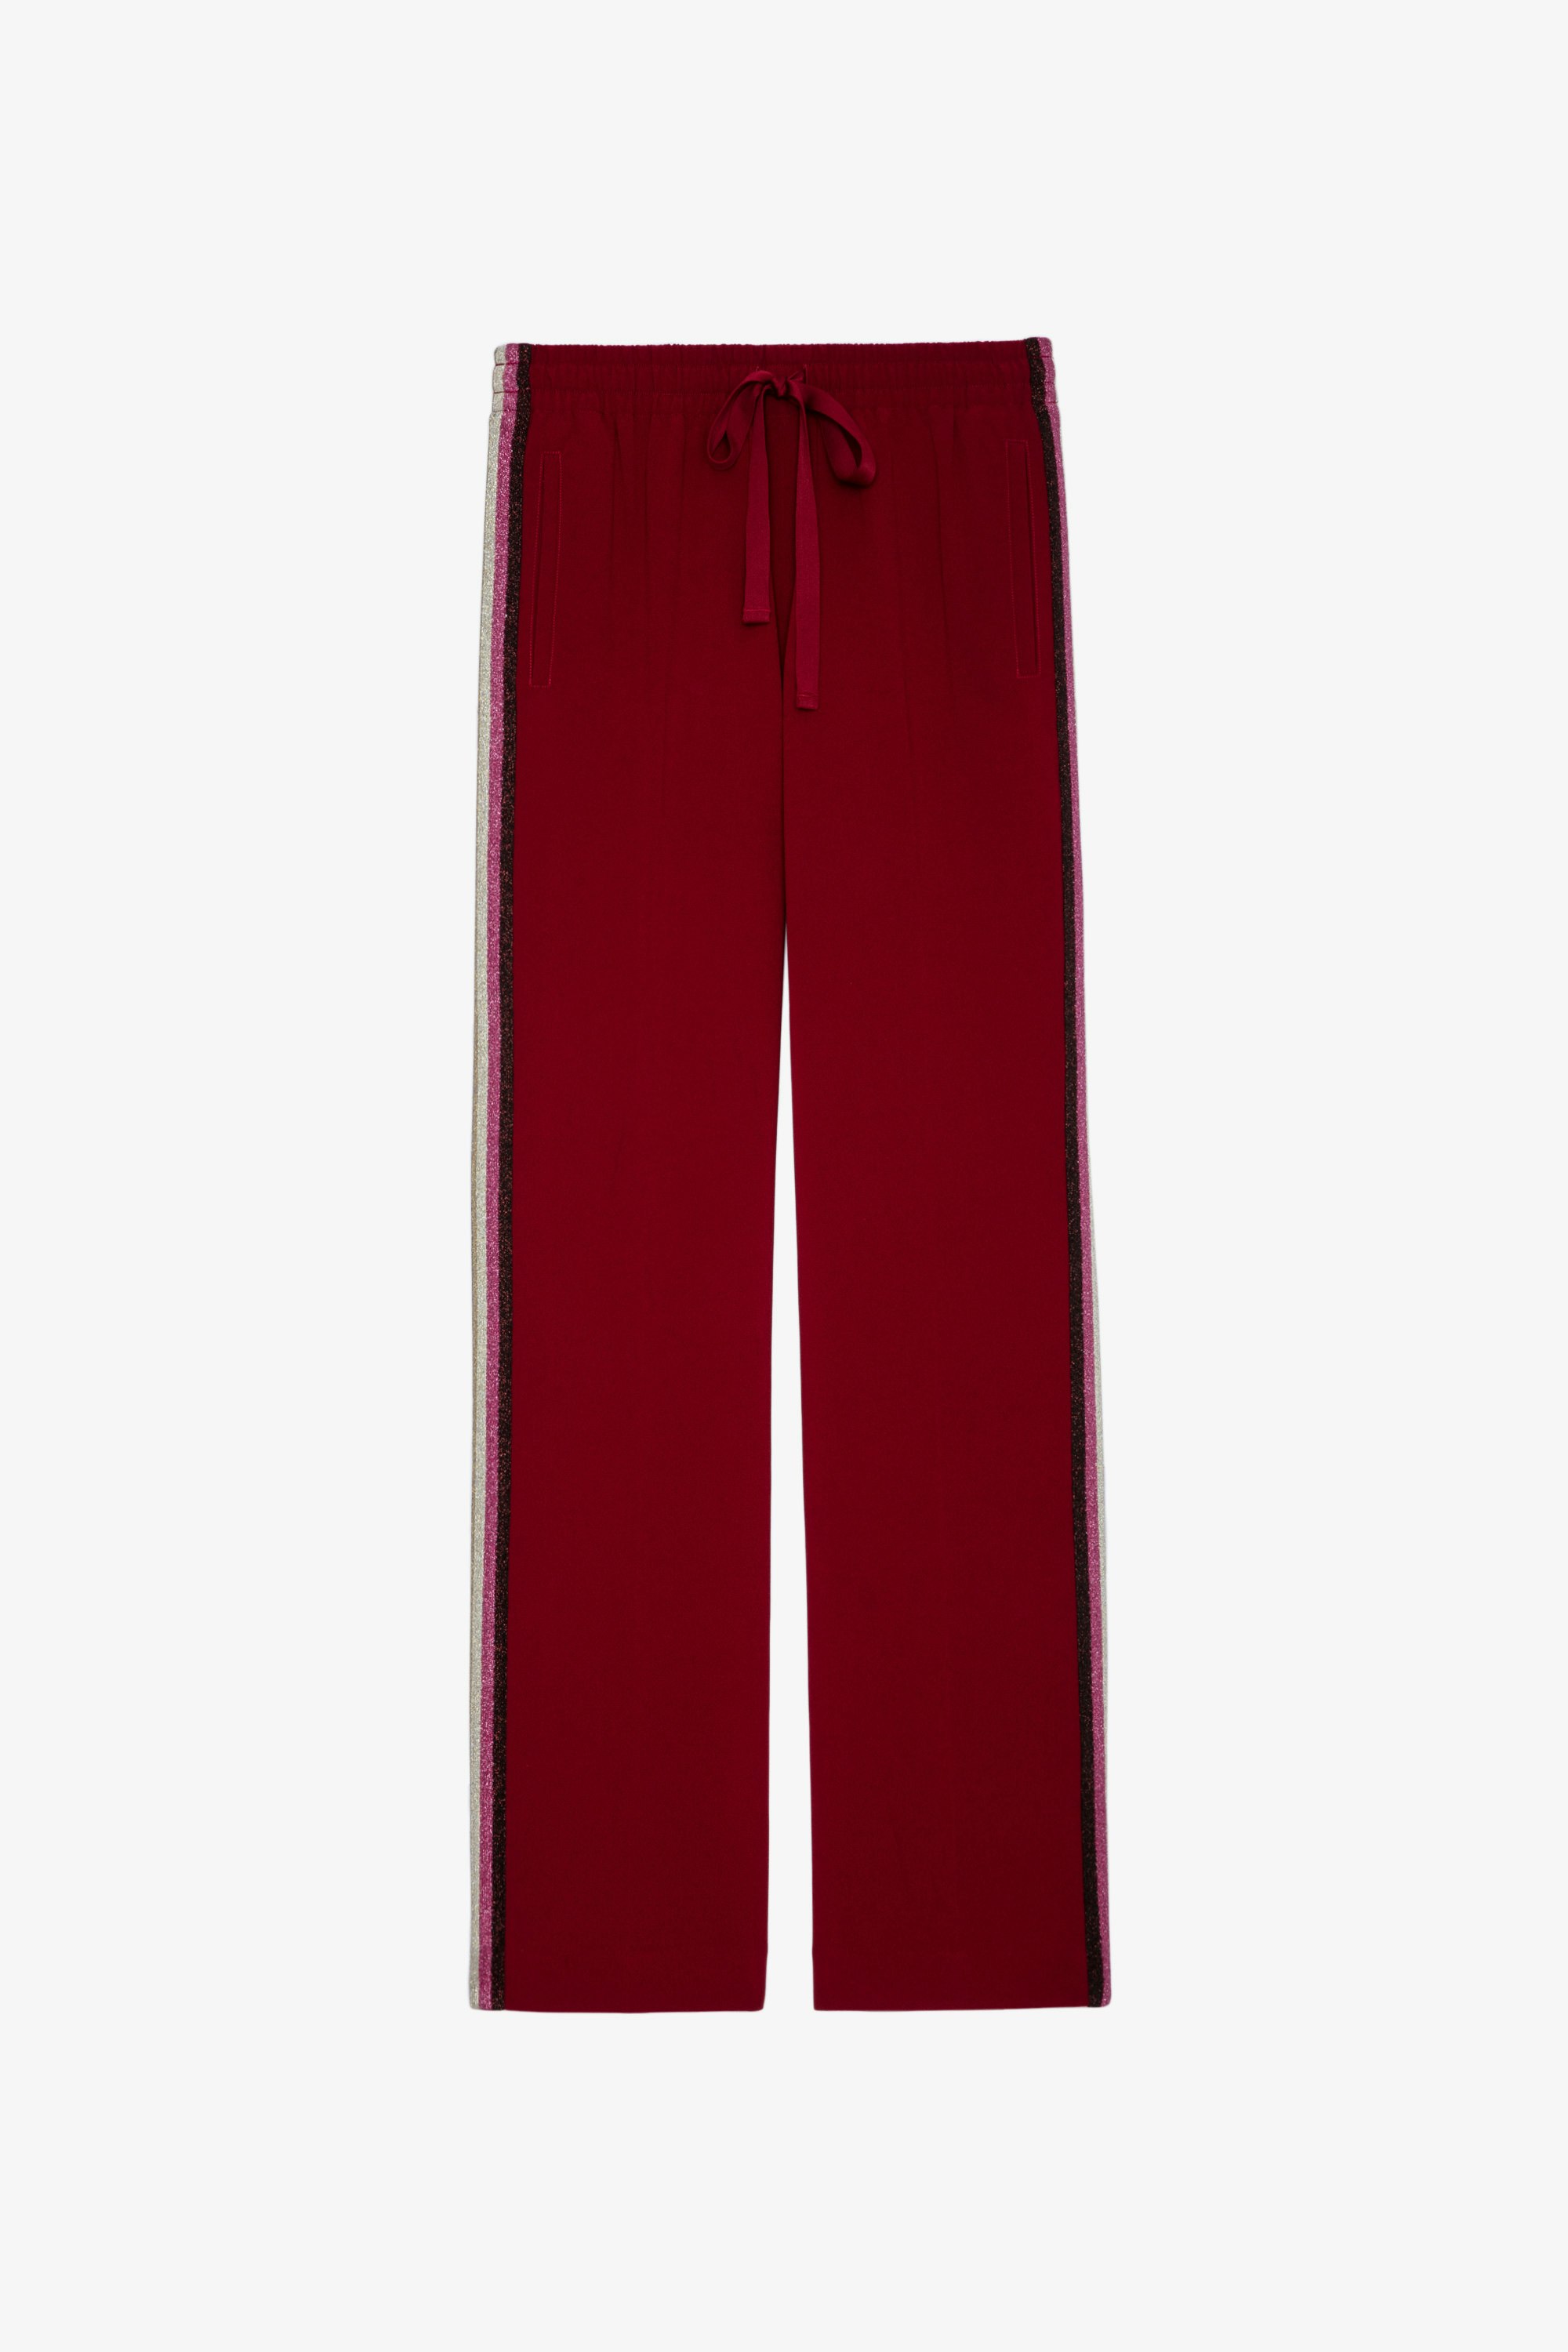 Pantalón Pomy Pantalón con bandas laterales de colores y lentejuelas para mujer